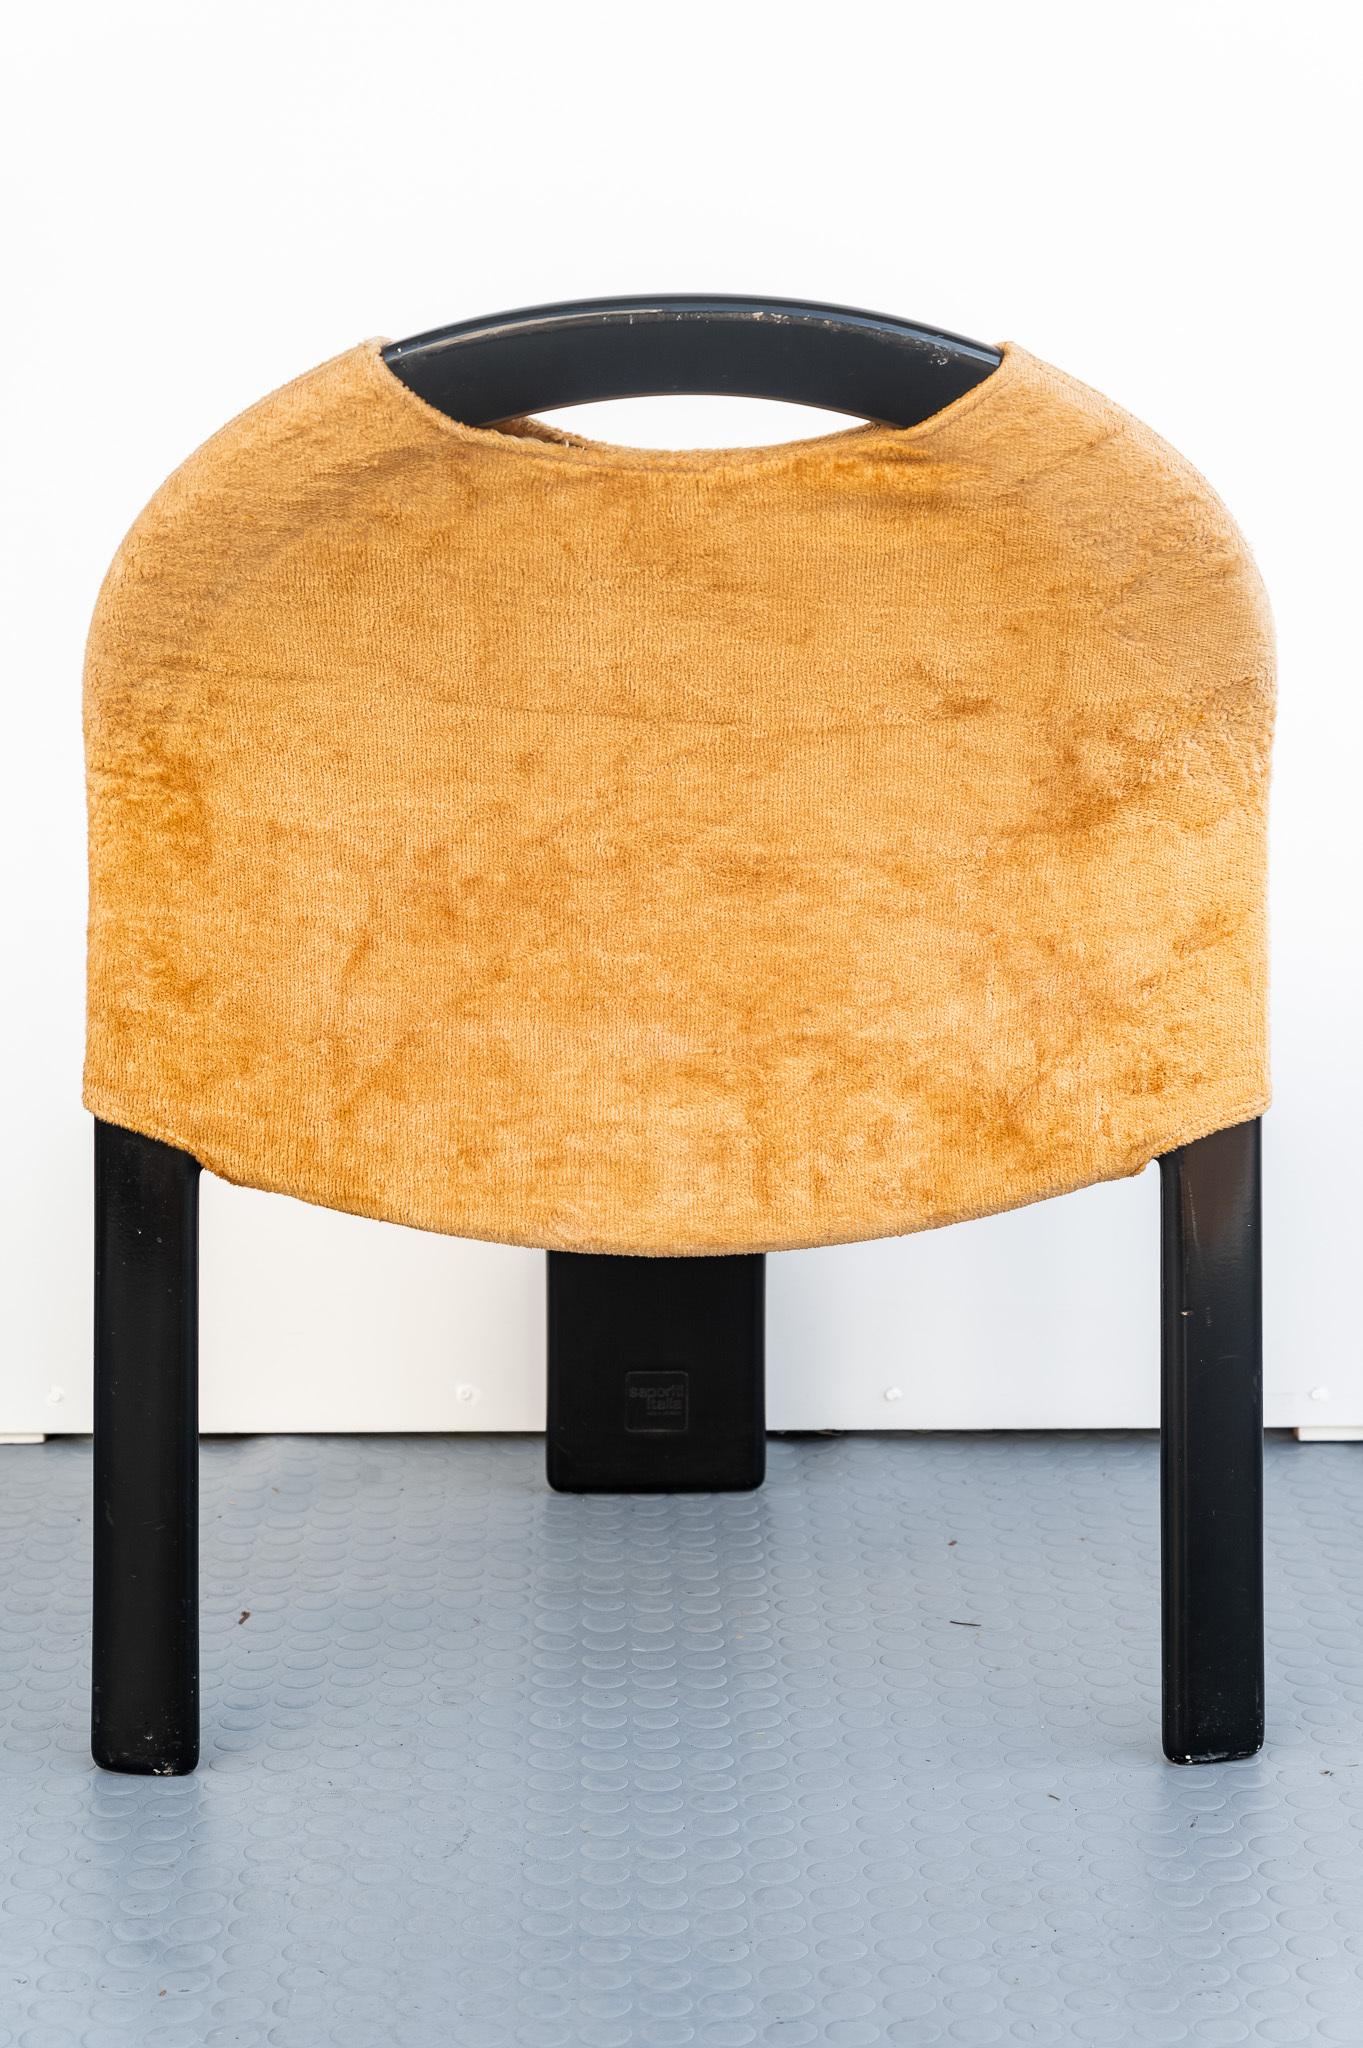 Bellissimo SET di due sedie Giovanni Offredi Saporiti, Anno 1970. 
SET di due sedie disegnate da Giovanni Offredi e prodotte da Saporiti nell'anno 1970. La Struttura è in ABS laccato nero con seduta e schienale in velluto color beige, original. 
E'